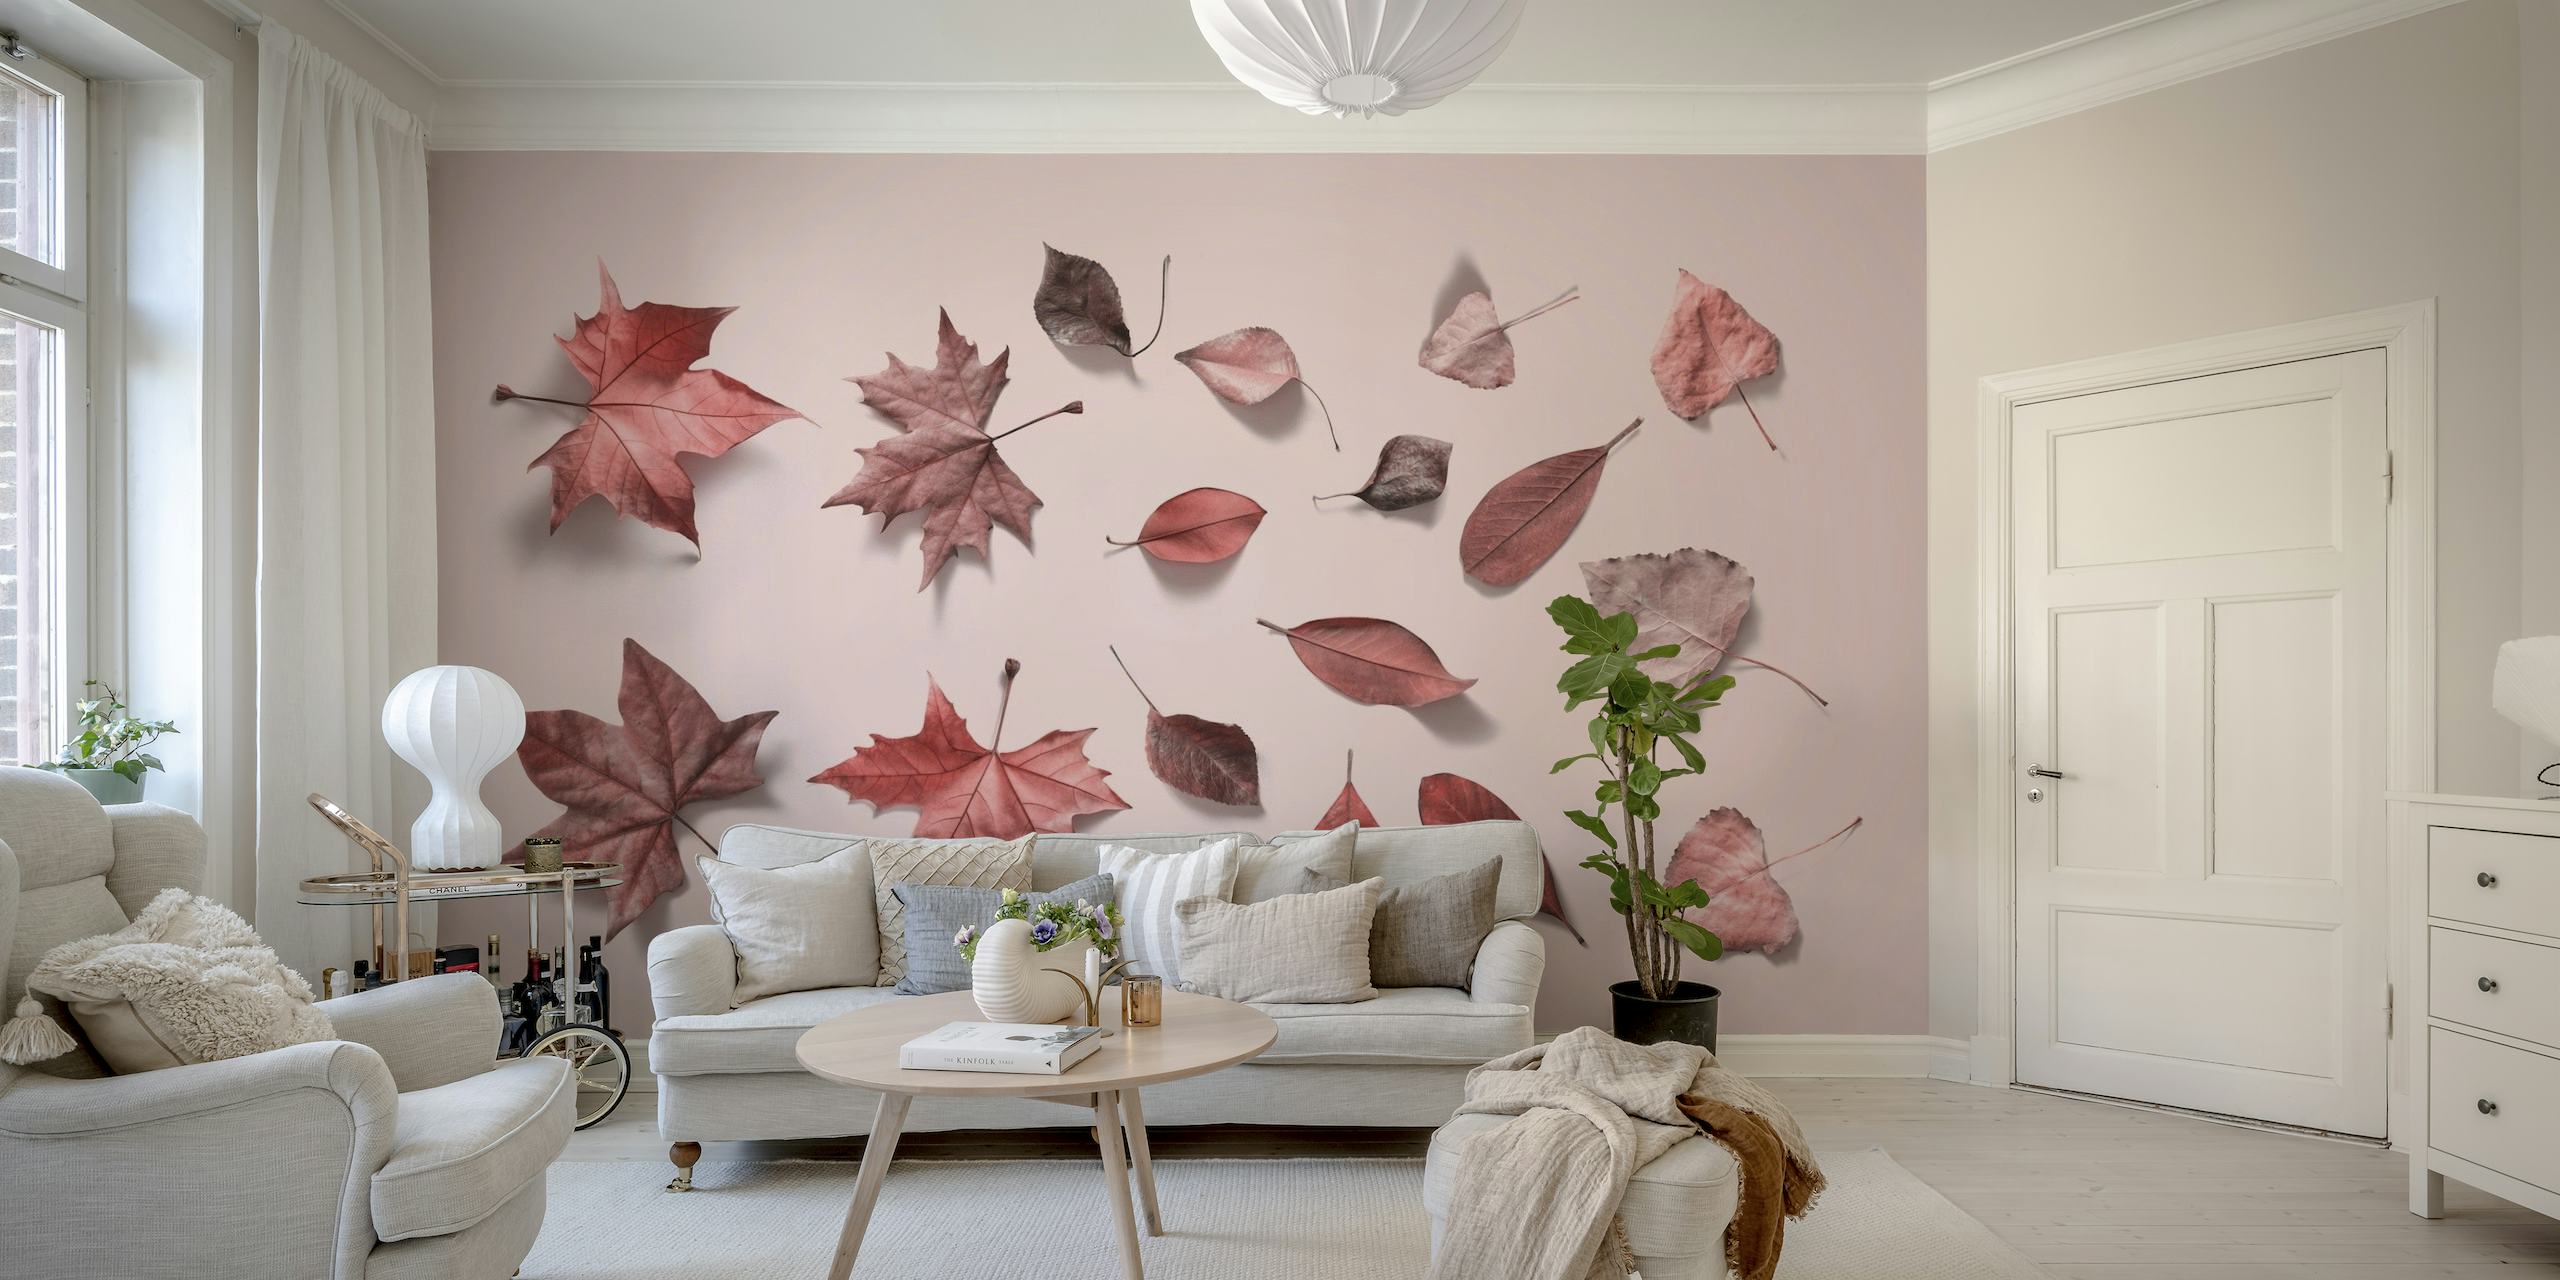 Lysrosa vægmaleri med spredt arrangement af efterårsblade i forskellige lyserøde nuancer.